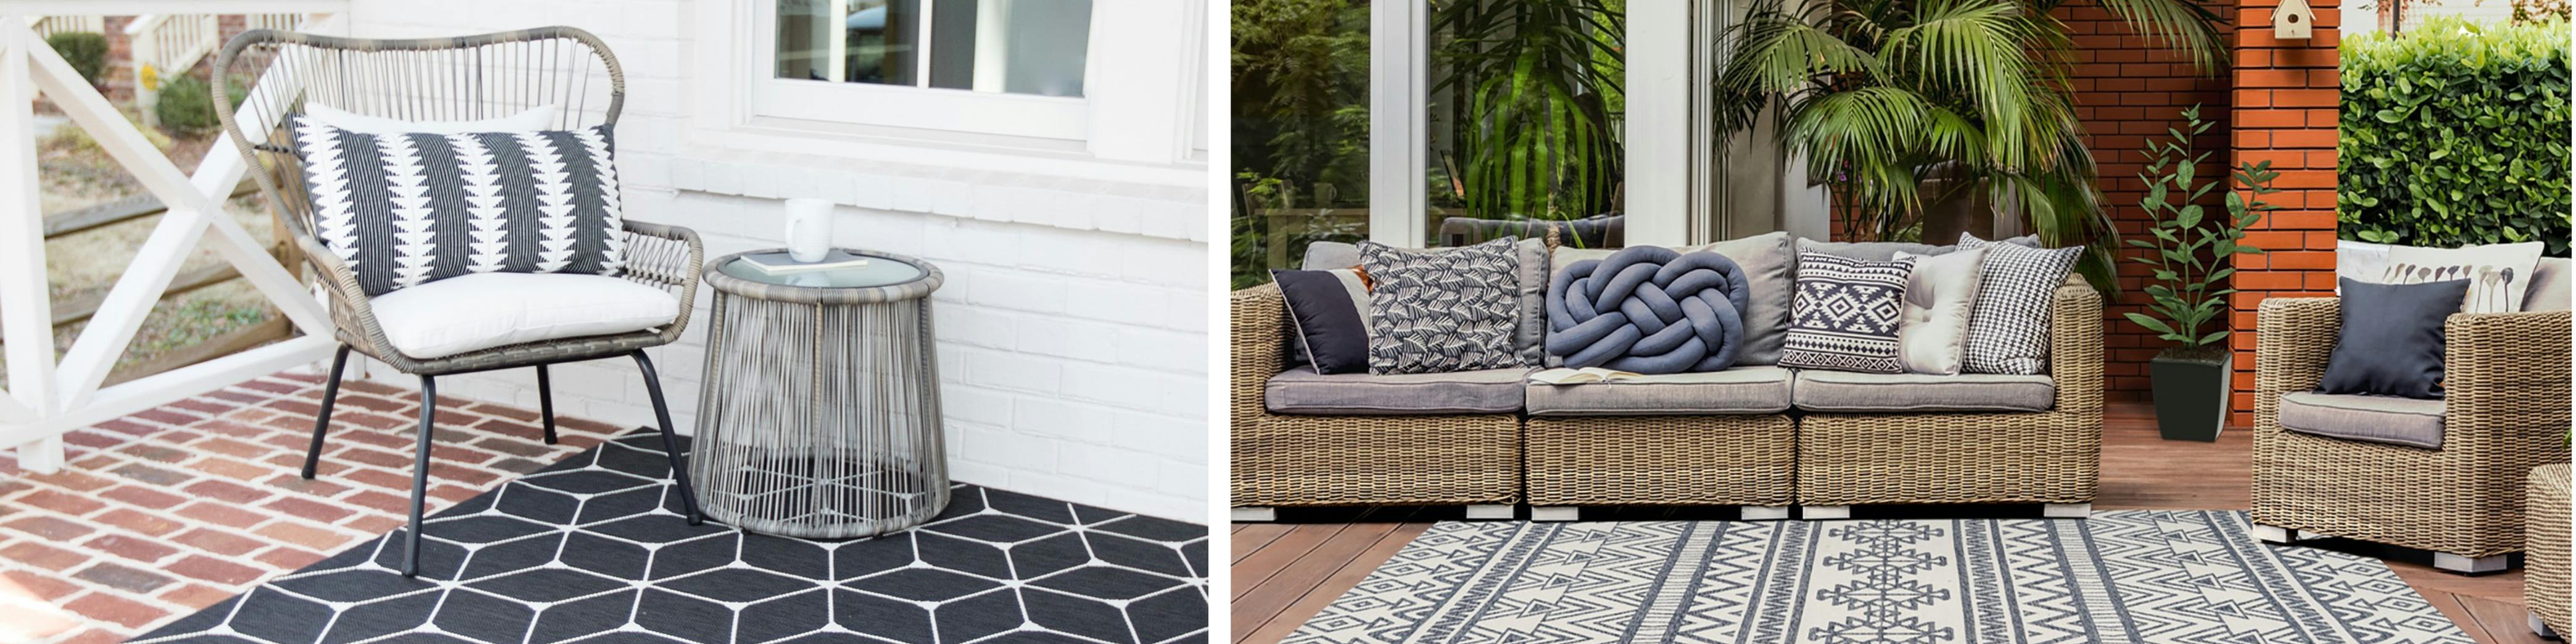 Terrasse mit Loungemöbeln, kuscheligen Textilien und wetterfesten Outdoor-Teppichen